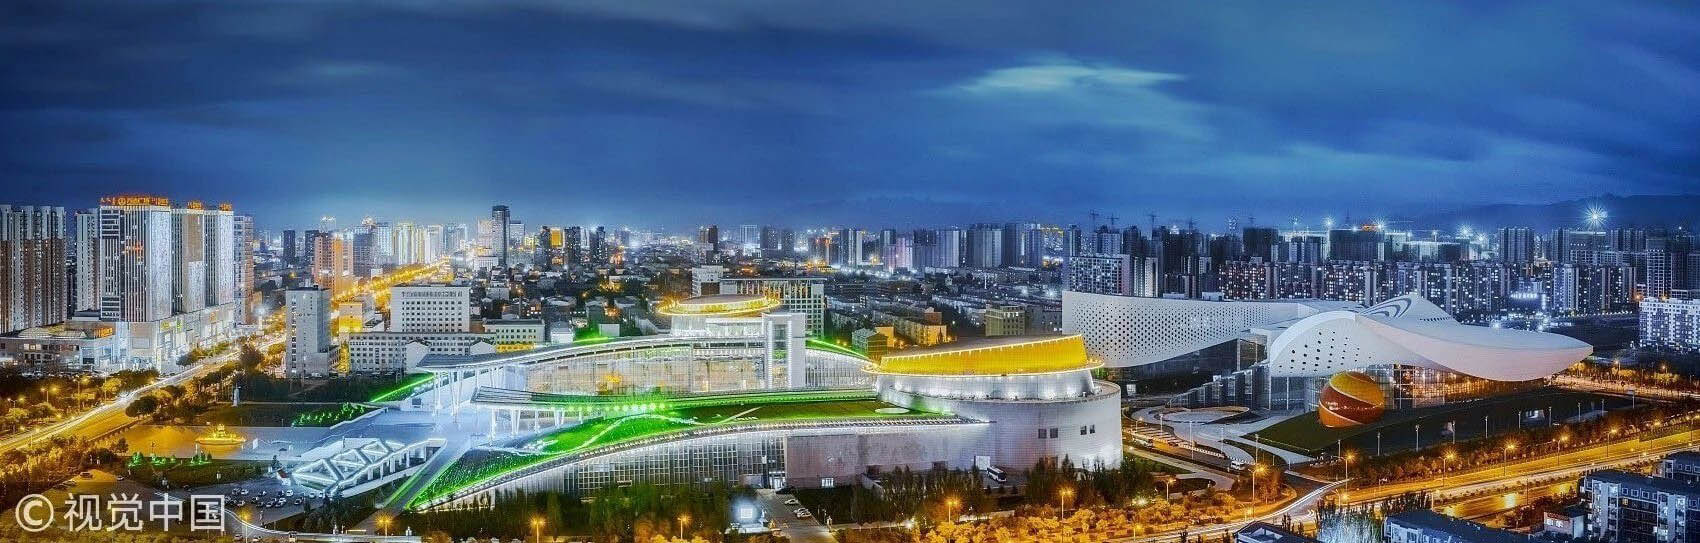 2019内蒙古蒙古包设计大赛